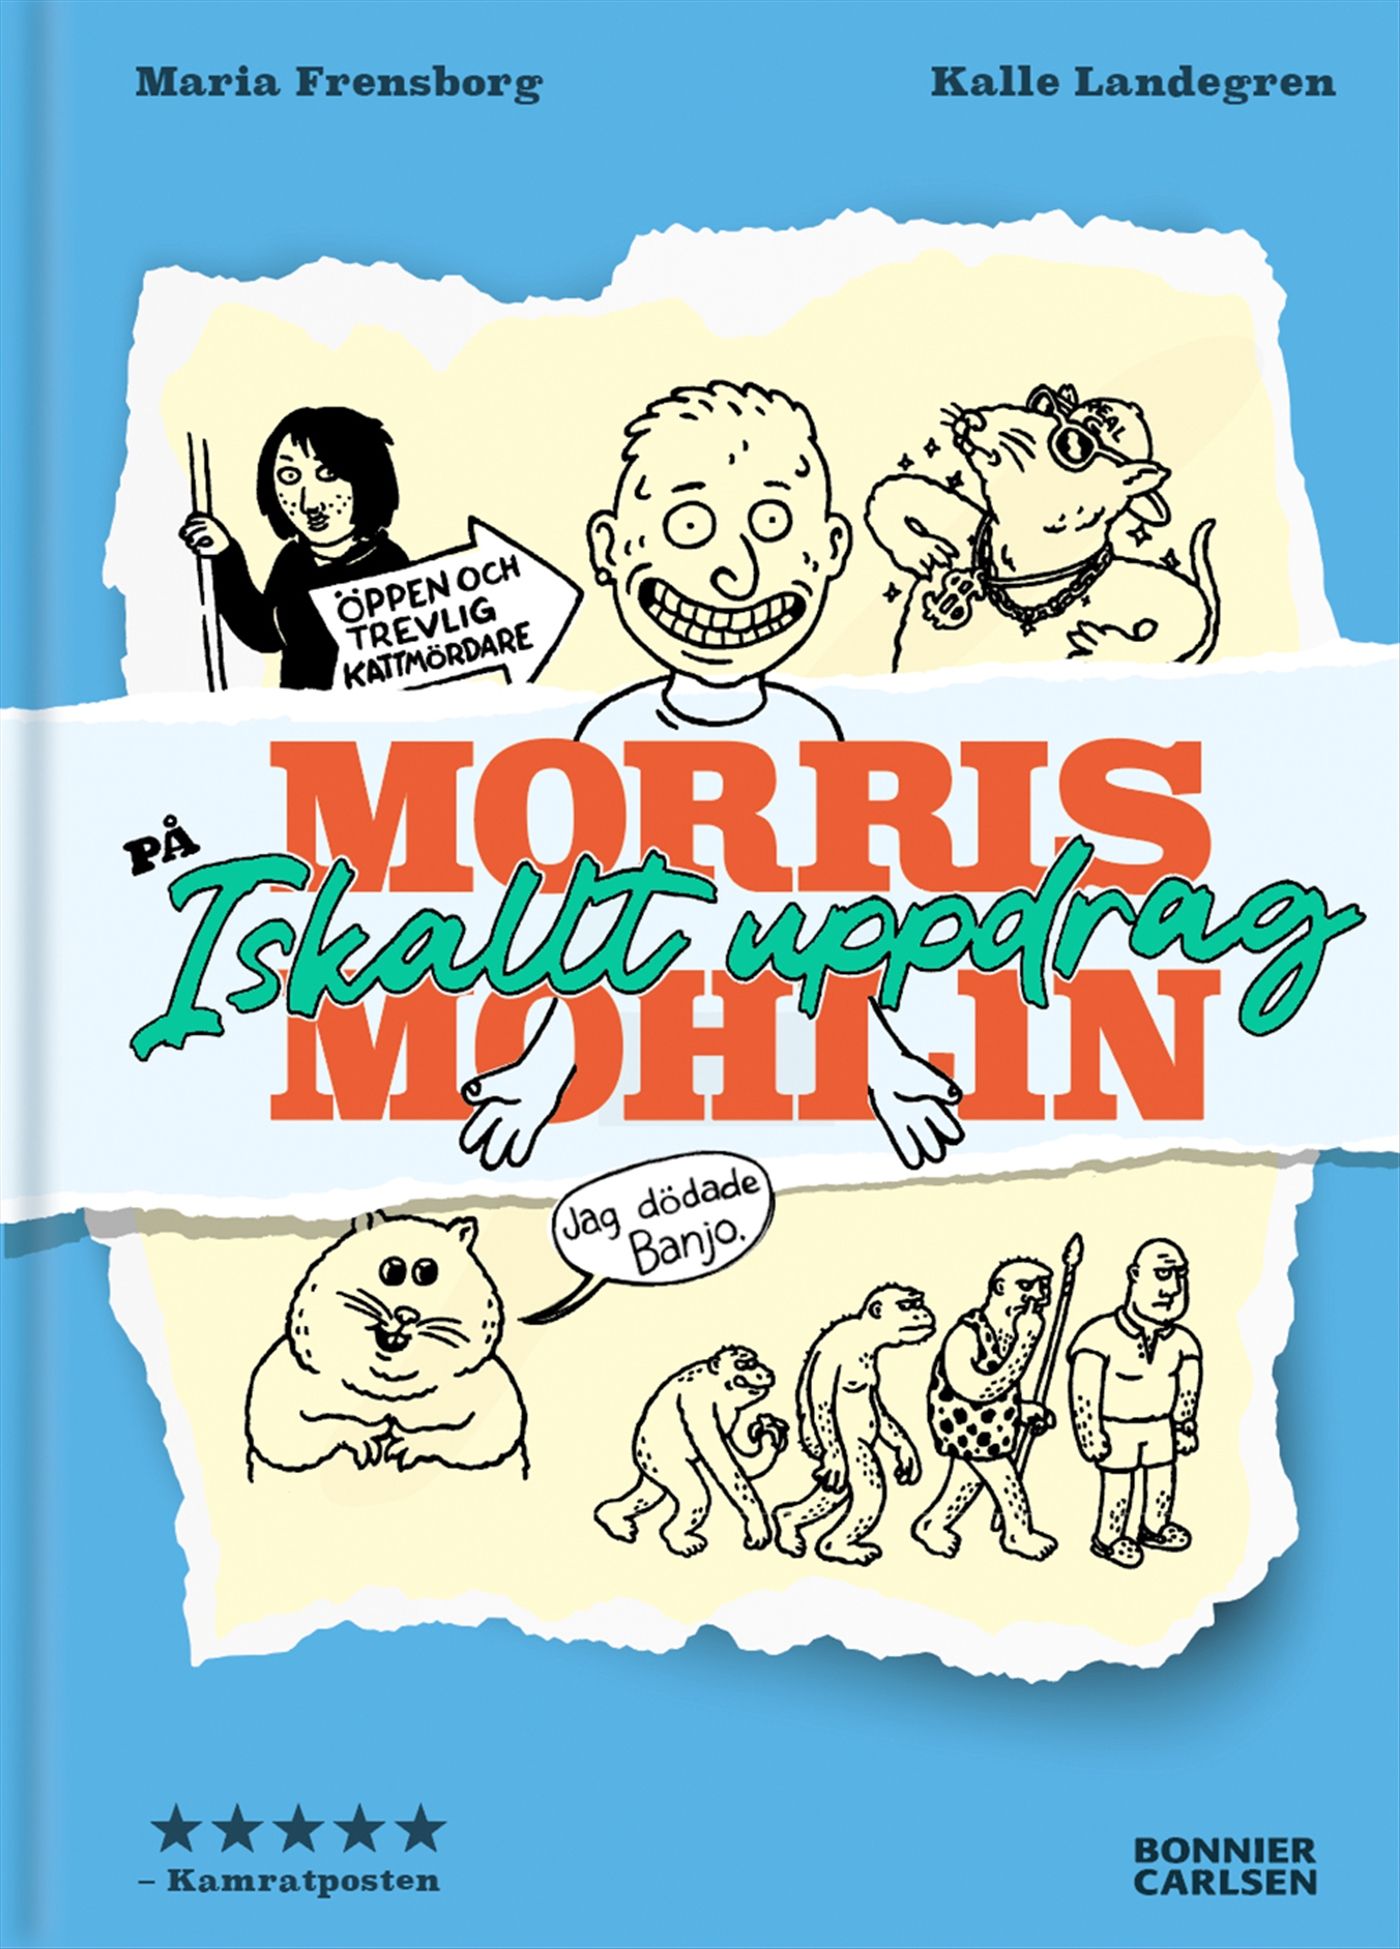 Morris Mohlin på iskallt uppdrag, e-bog af Maria Frensborg